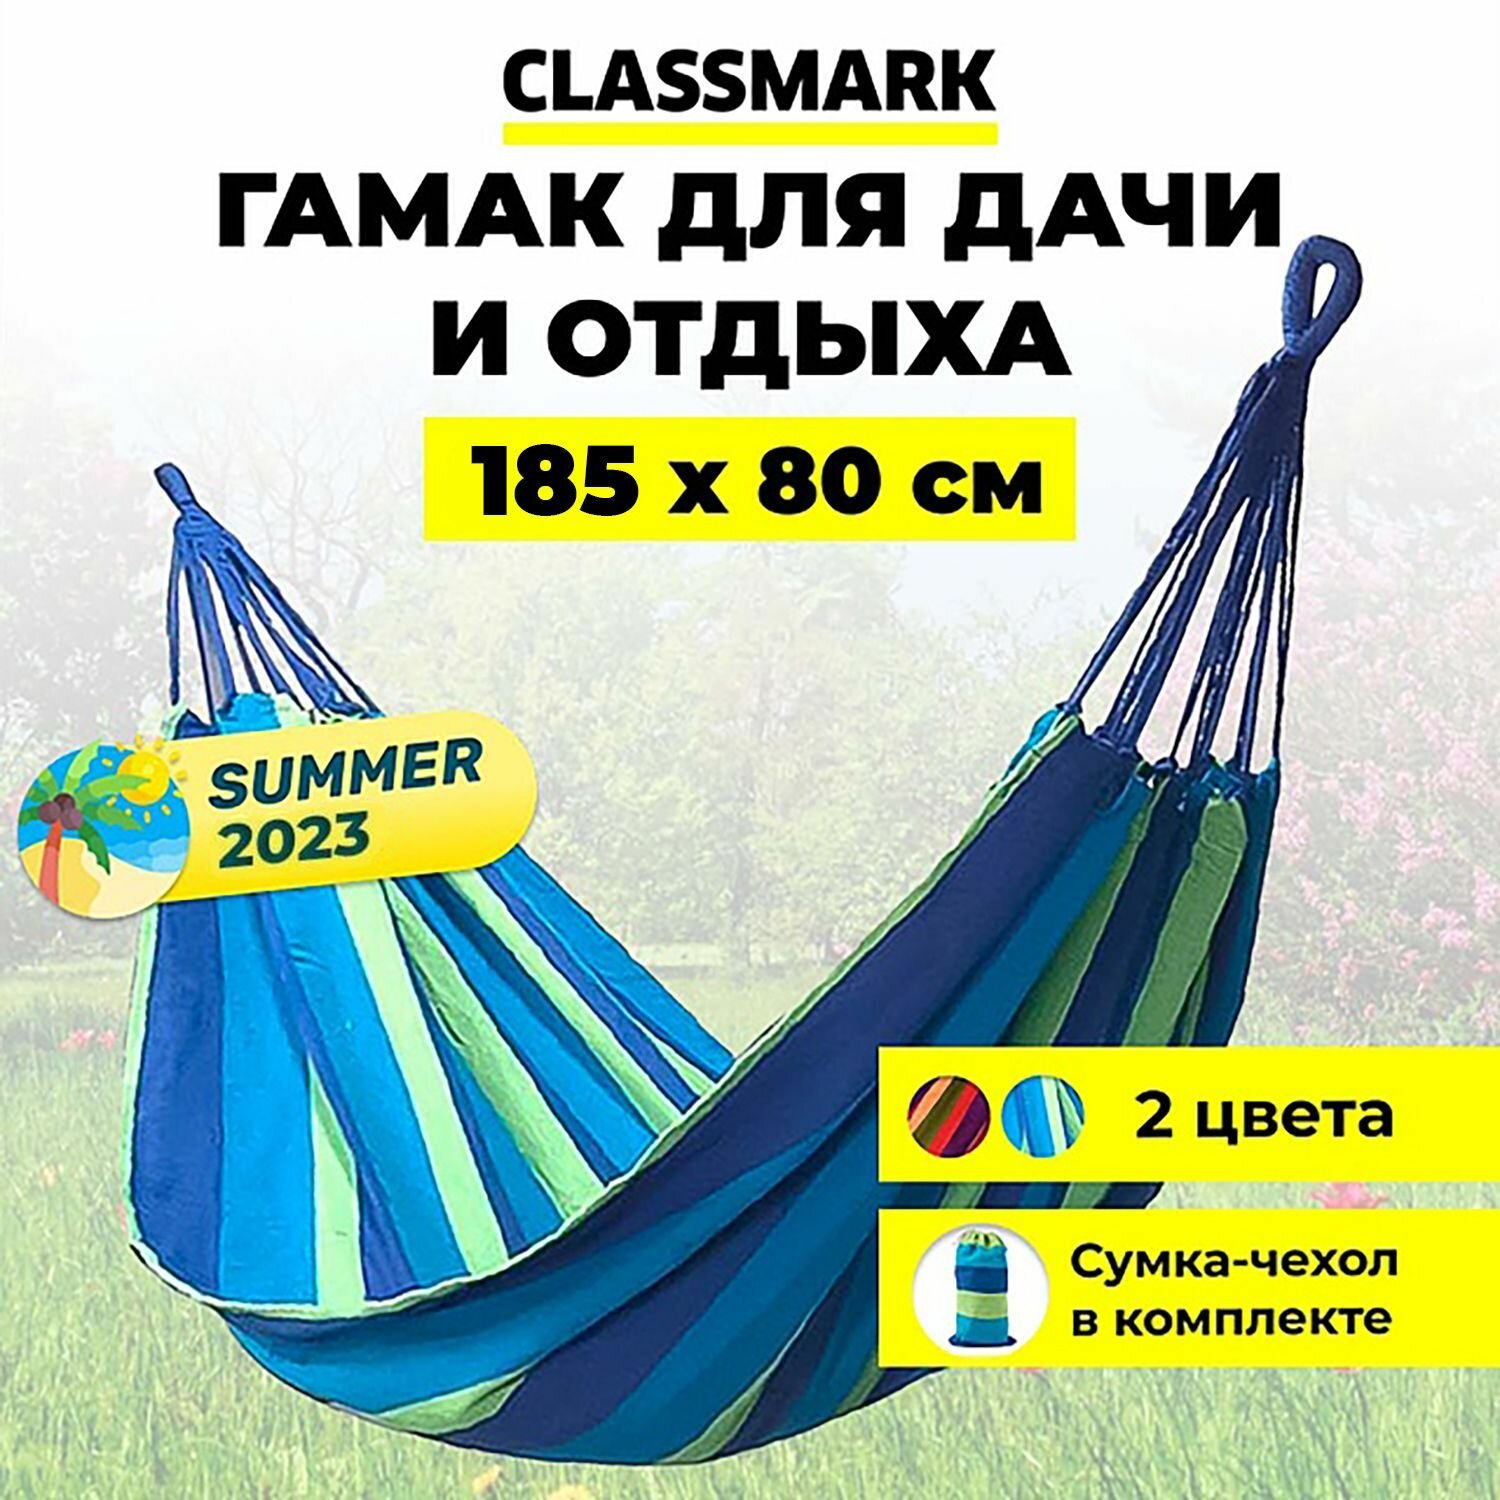 Classmark Гамак подвесной для детей и взрослых уличный туристический, синий, 200х80